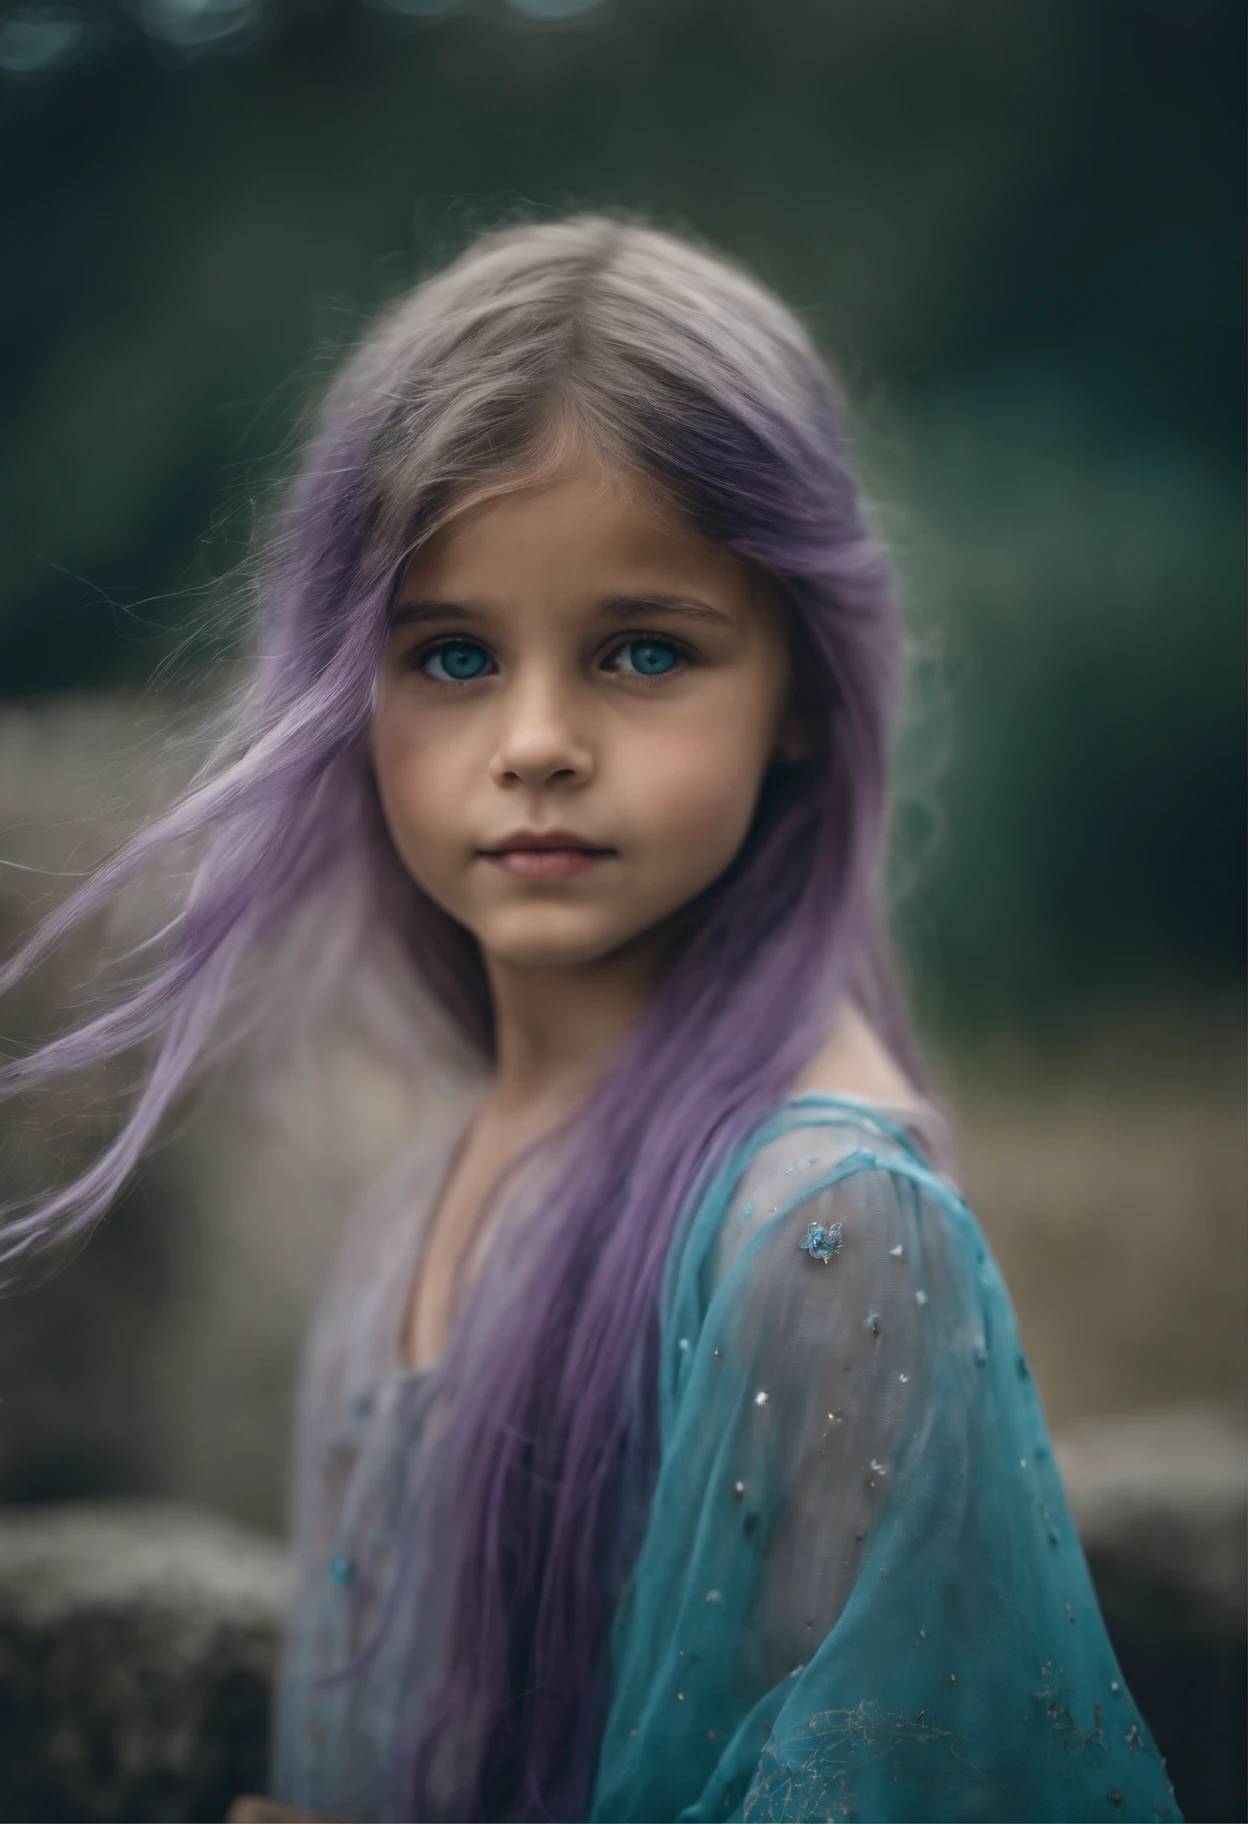 ein schönes Mädchen, ca. 8 Jahre alt. The girl has long light blue Haar, straight Haar, ((unordentlich)) Haar, bangs)) und große blaue Augen. Das Mädchen trägt eine türkisfarbene Tunika und eine lilafarbene Hose. Griechischer Tempelruinen-Hintergrund. Sternenhimmel.